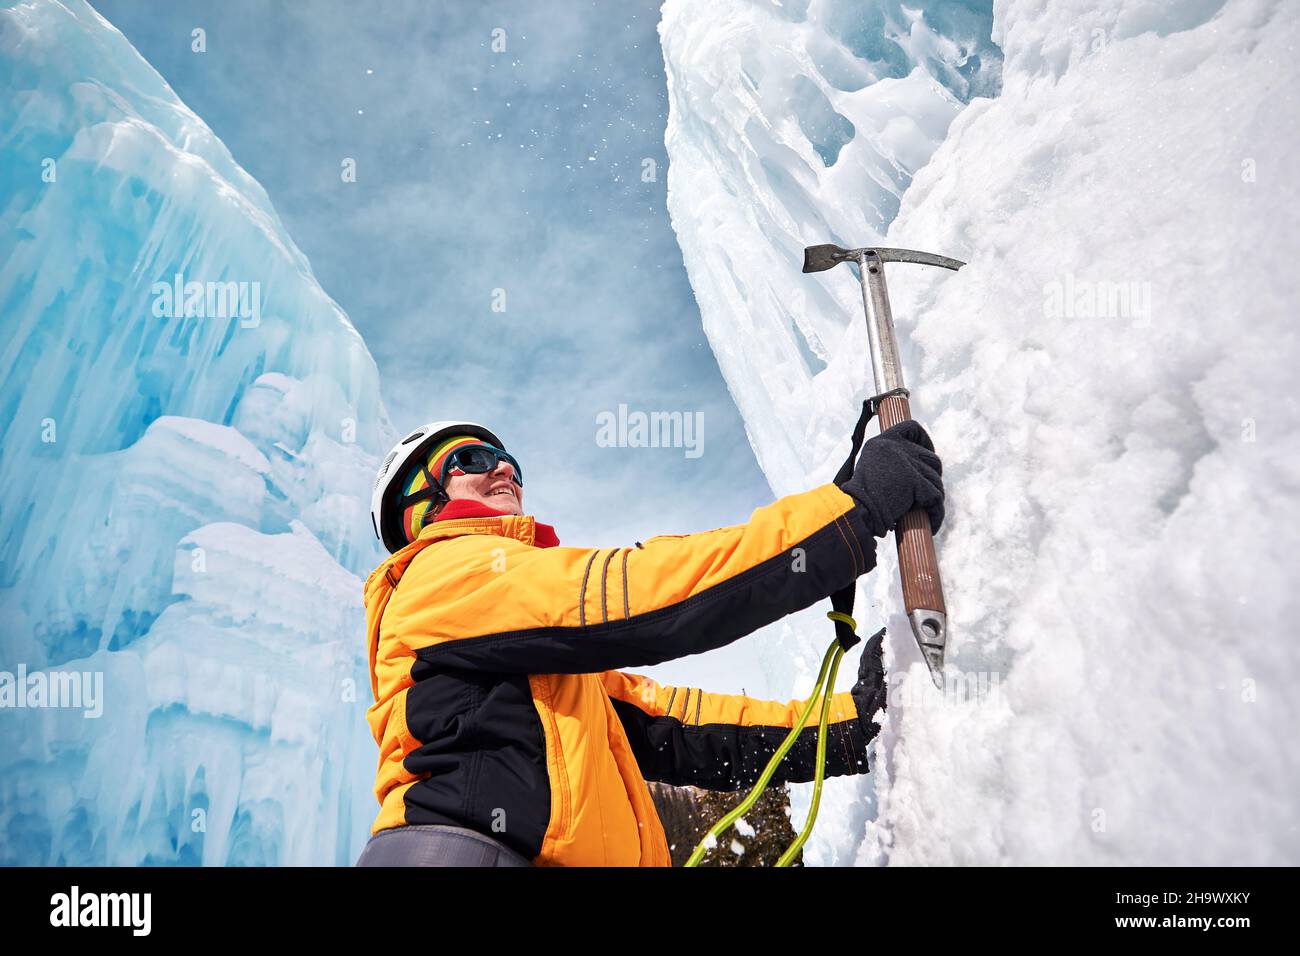 Une femme escalade une chute d'eau gelée dans un casque avec une hache de glace dans une veste orange dans les montagnes.Sport alpinisme et alpinisme concept. Banque D'Images